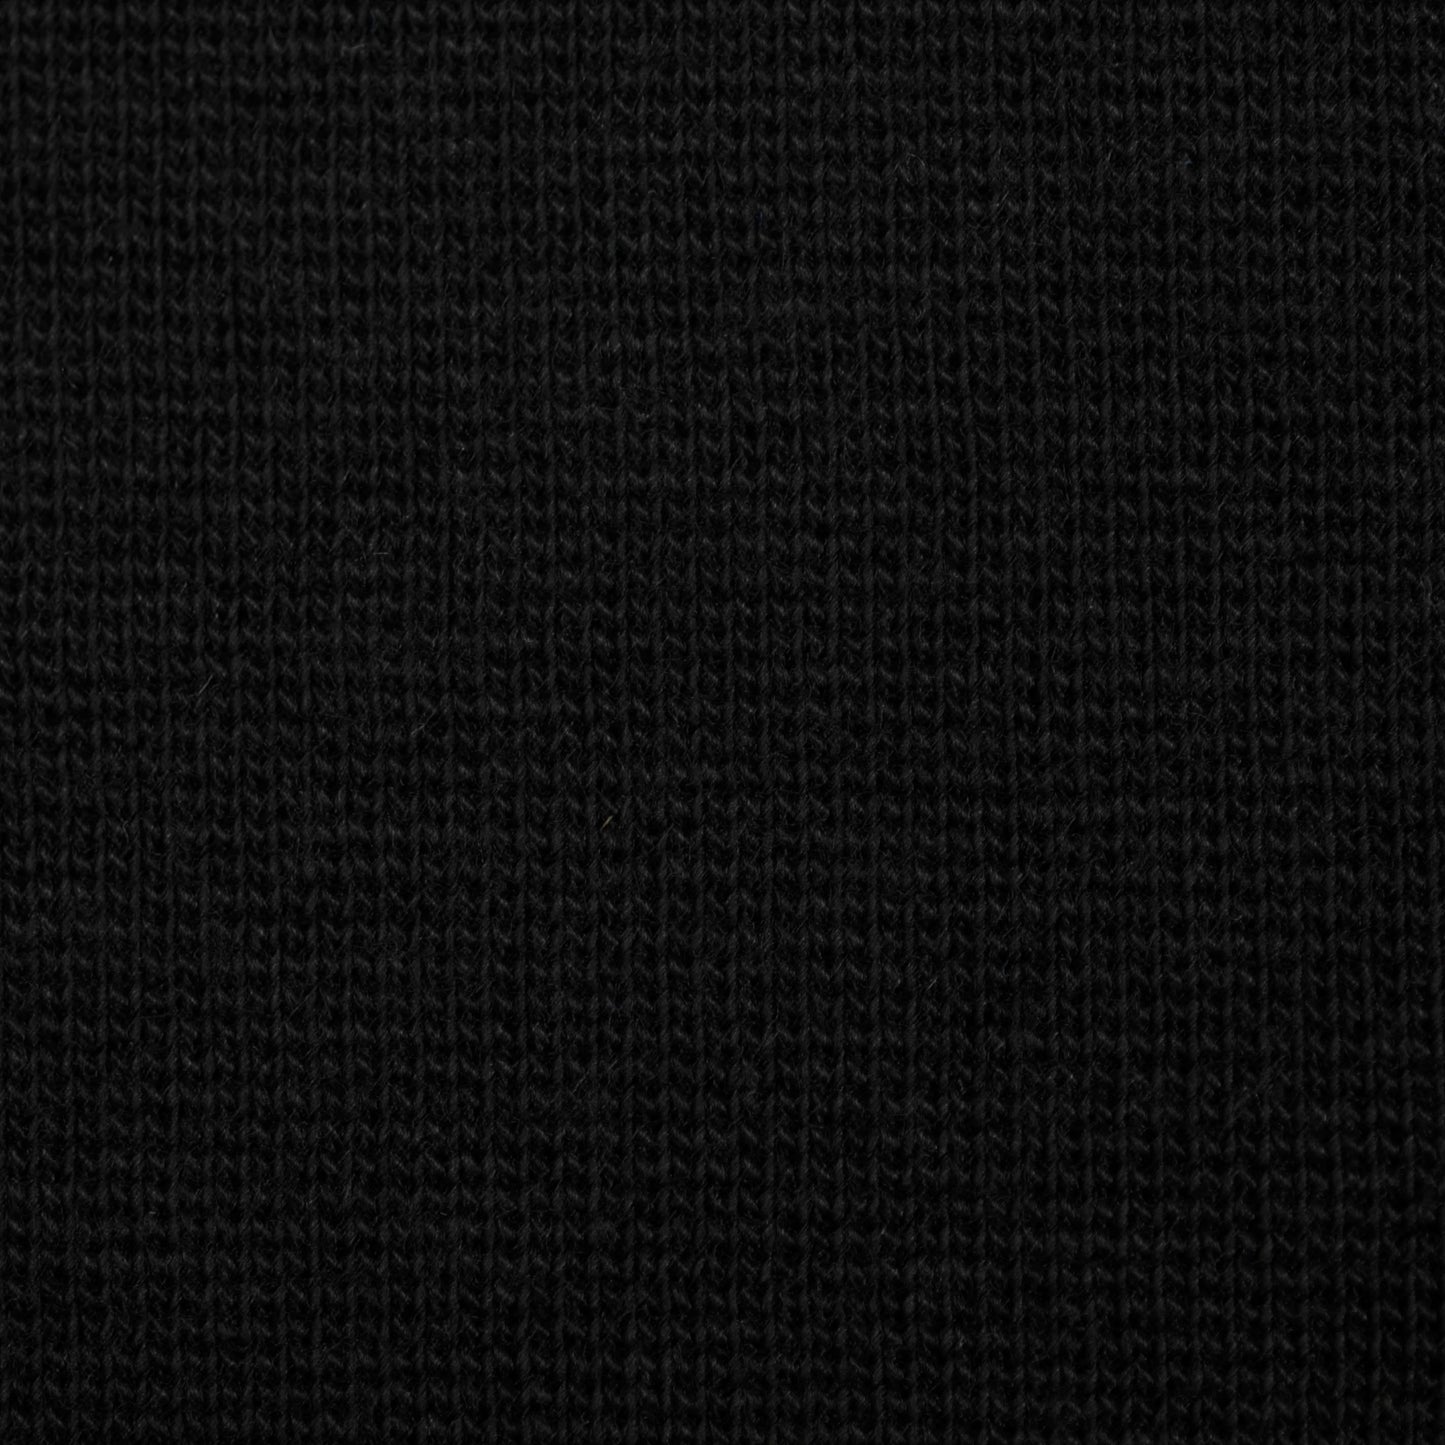 95% Organic Cotton, 5% Elastane Rib Knit - Black (2RB008)